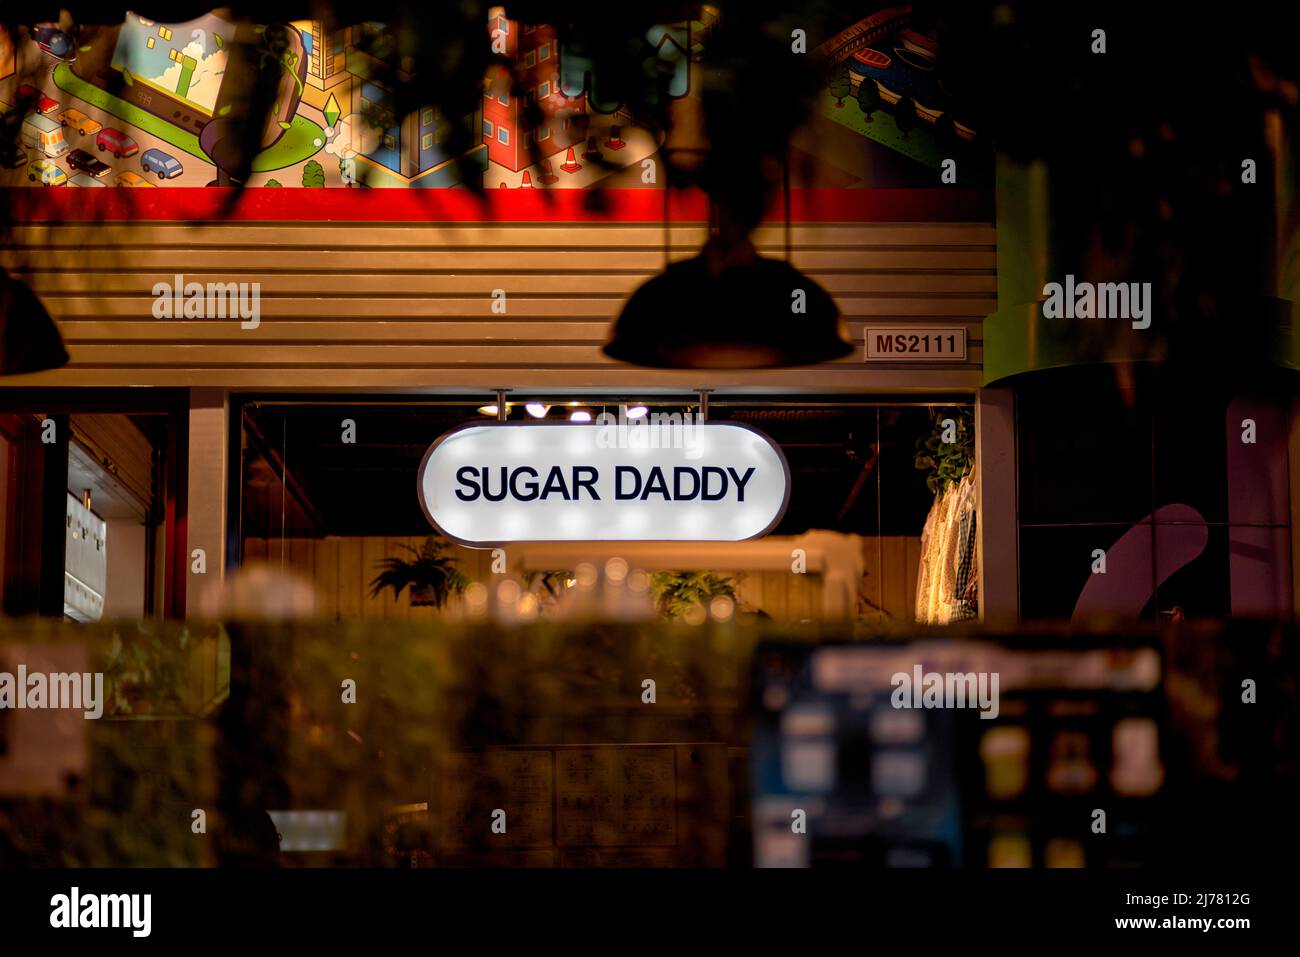 Cartel de la tienda Sugar Daddy Foto de stock